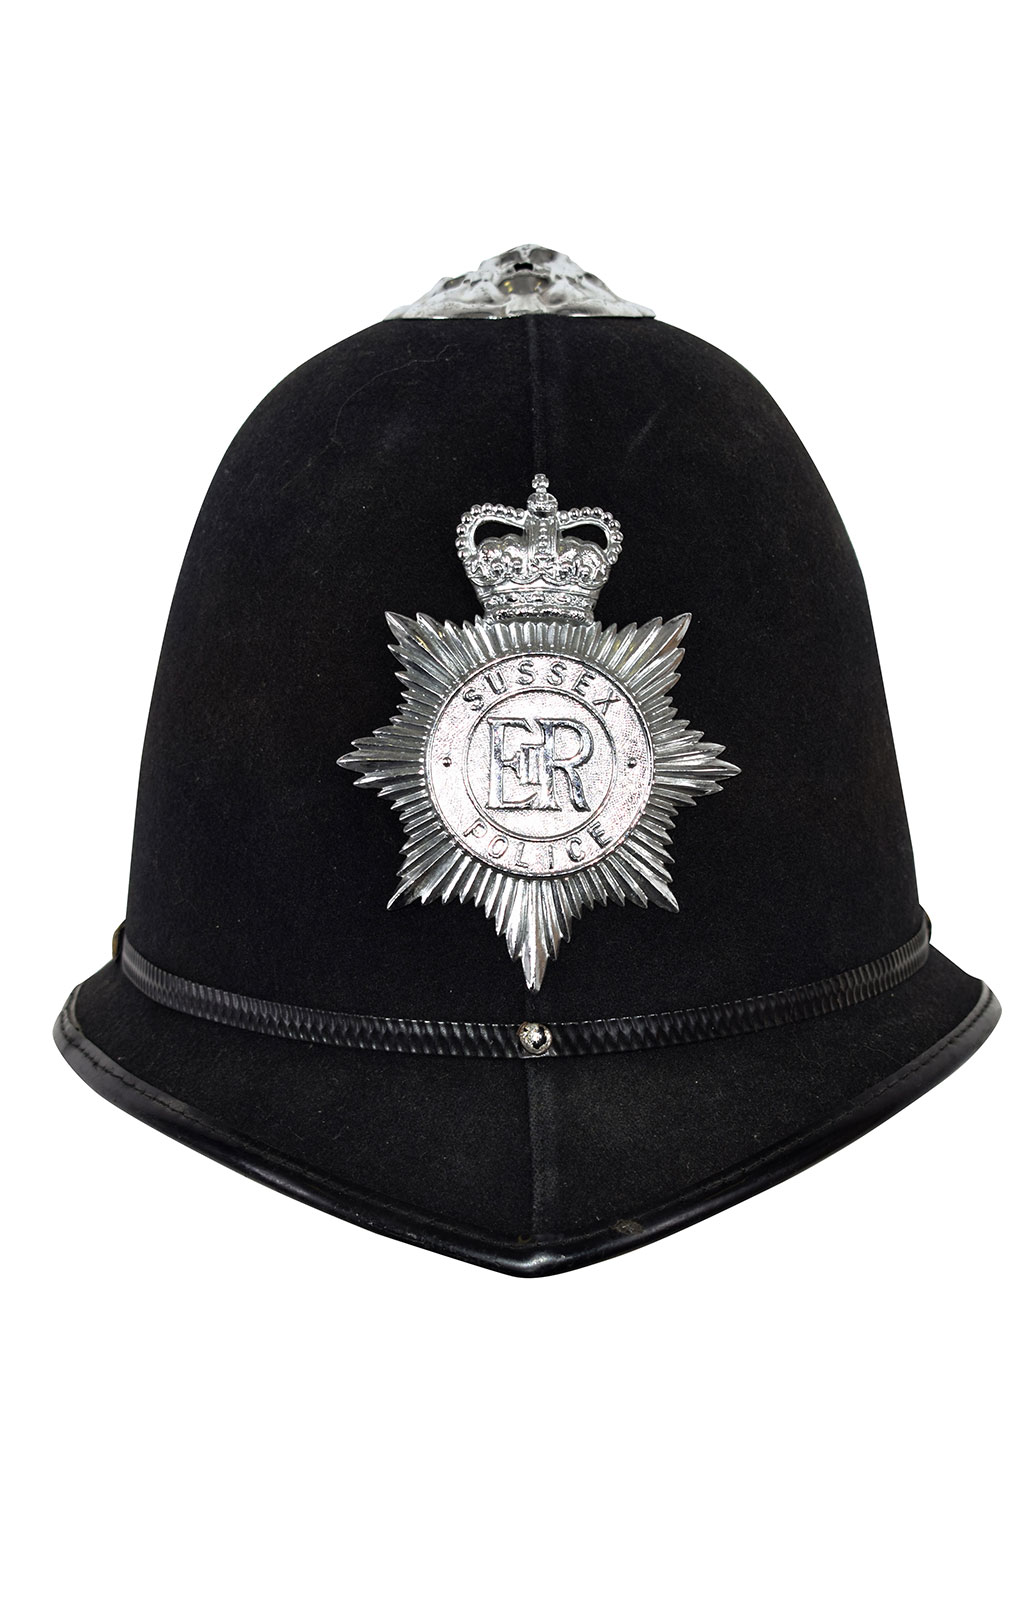 Шлем полицейский SUSSEX EIIR б/у Англия